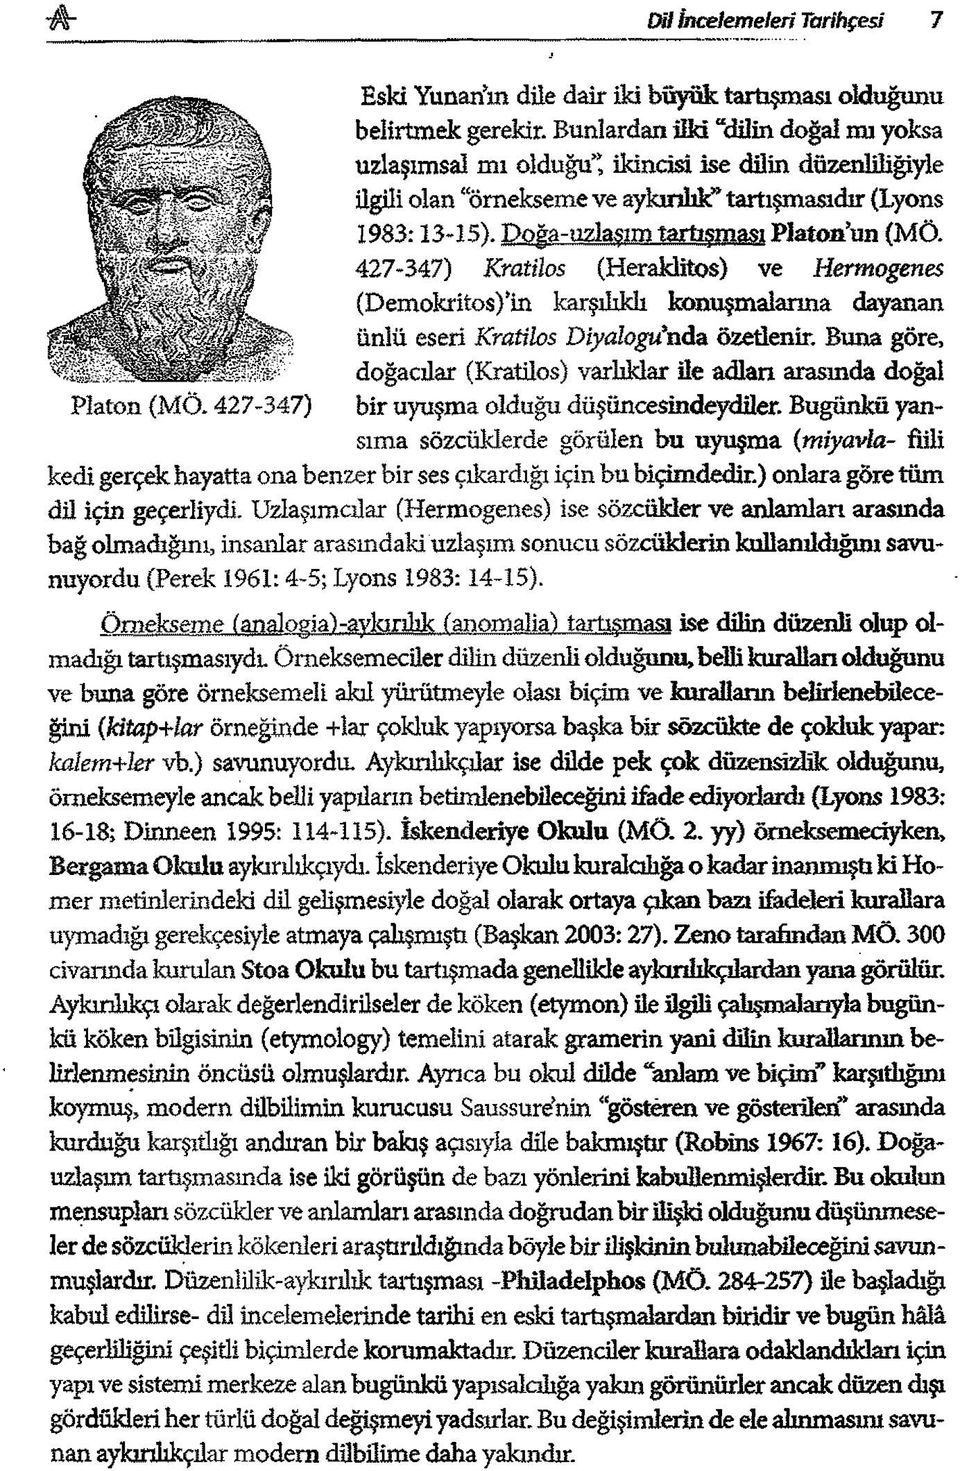 Poğa-ıızlaşım tartışm ası P latonun (MÖ. 427-347) Kratüos (Heraklitos) ve Hermogenes (DemokritosVin karşılıklı konuşm alarına dayanan ünlü eseri Kratilos Diyalogu*hda özetlenir.